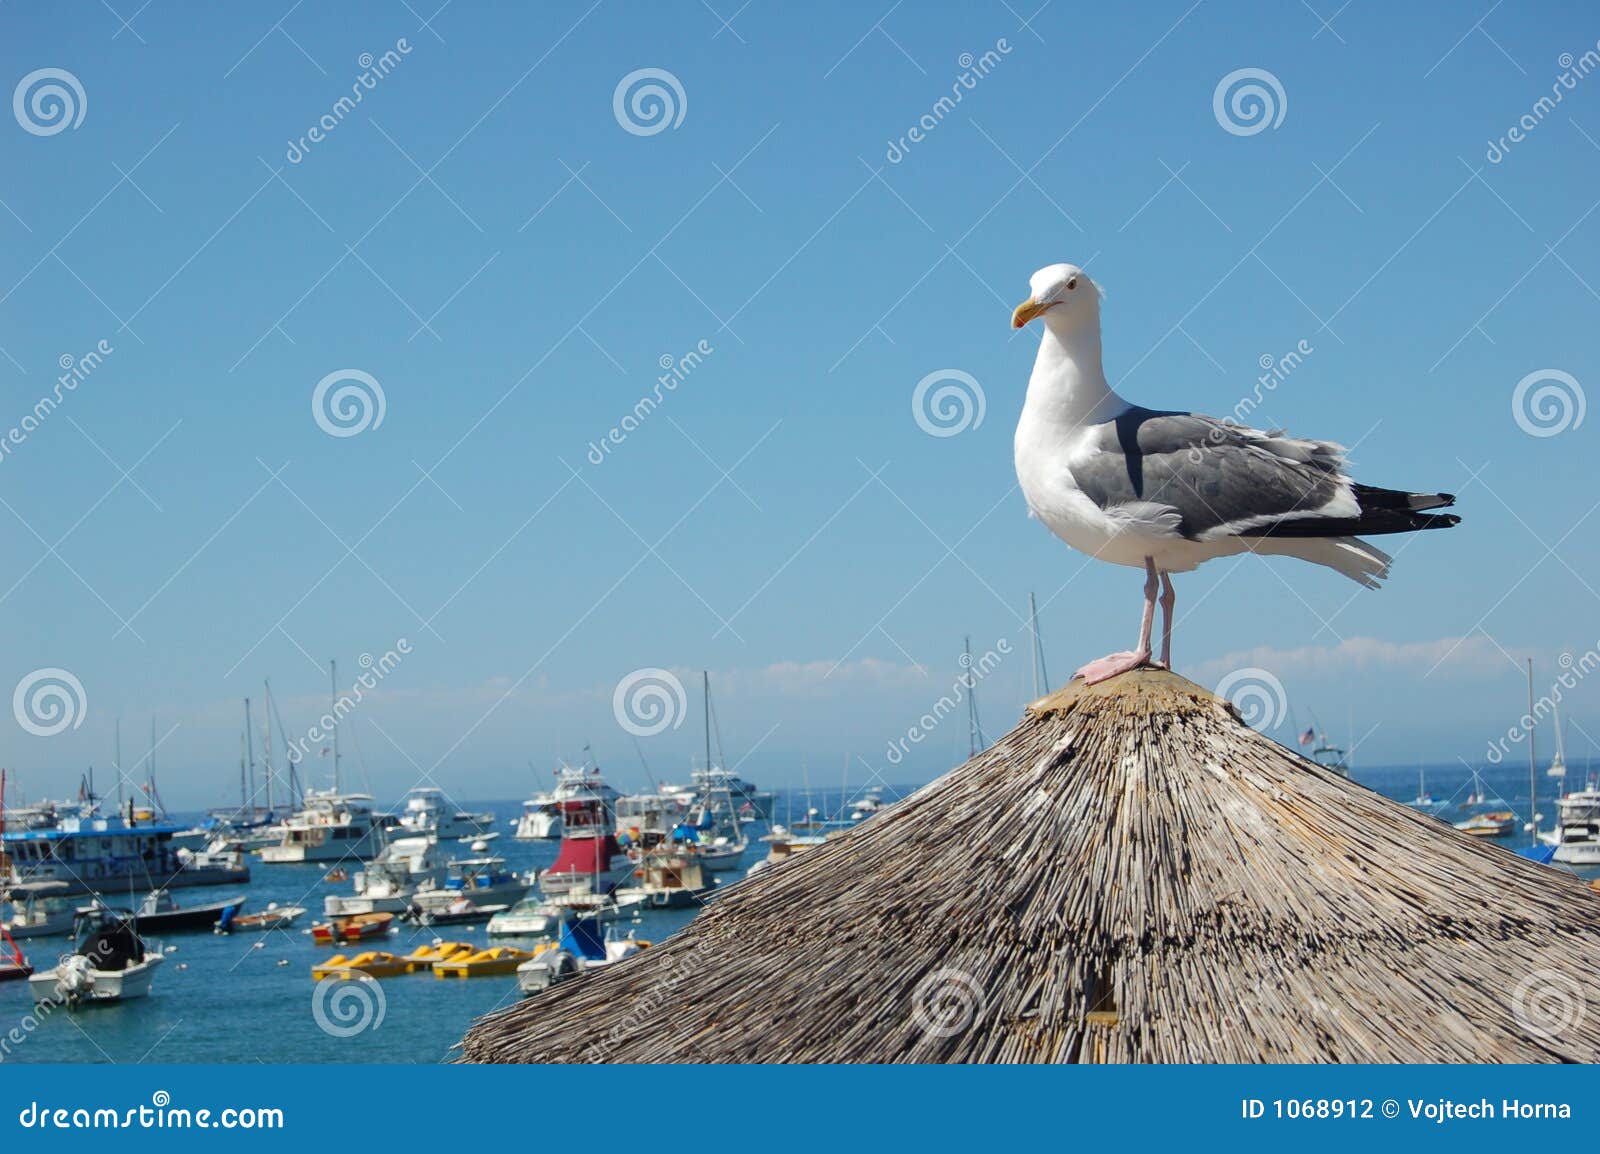 seagull catalina island